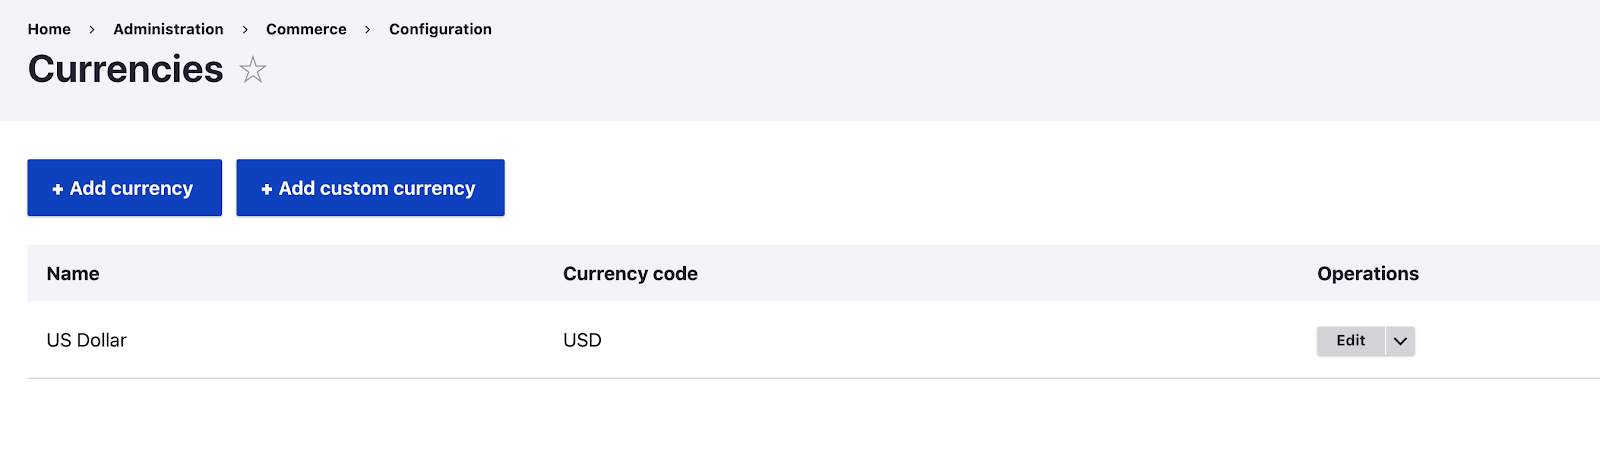 Drupal Commerce - Currencies